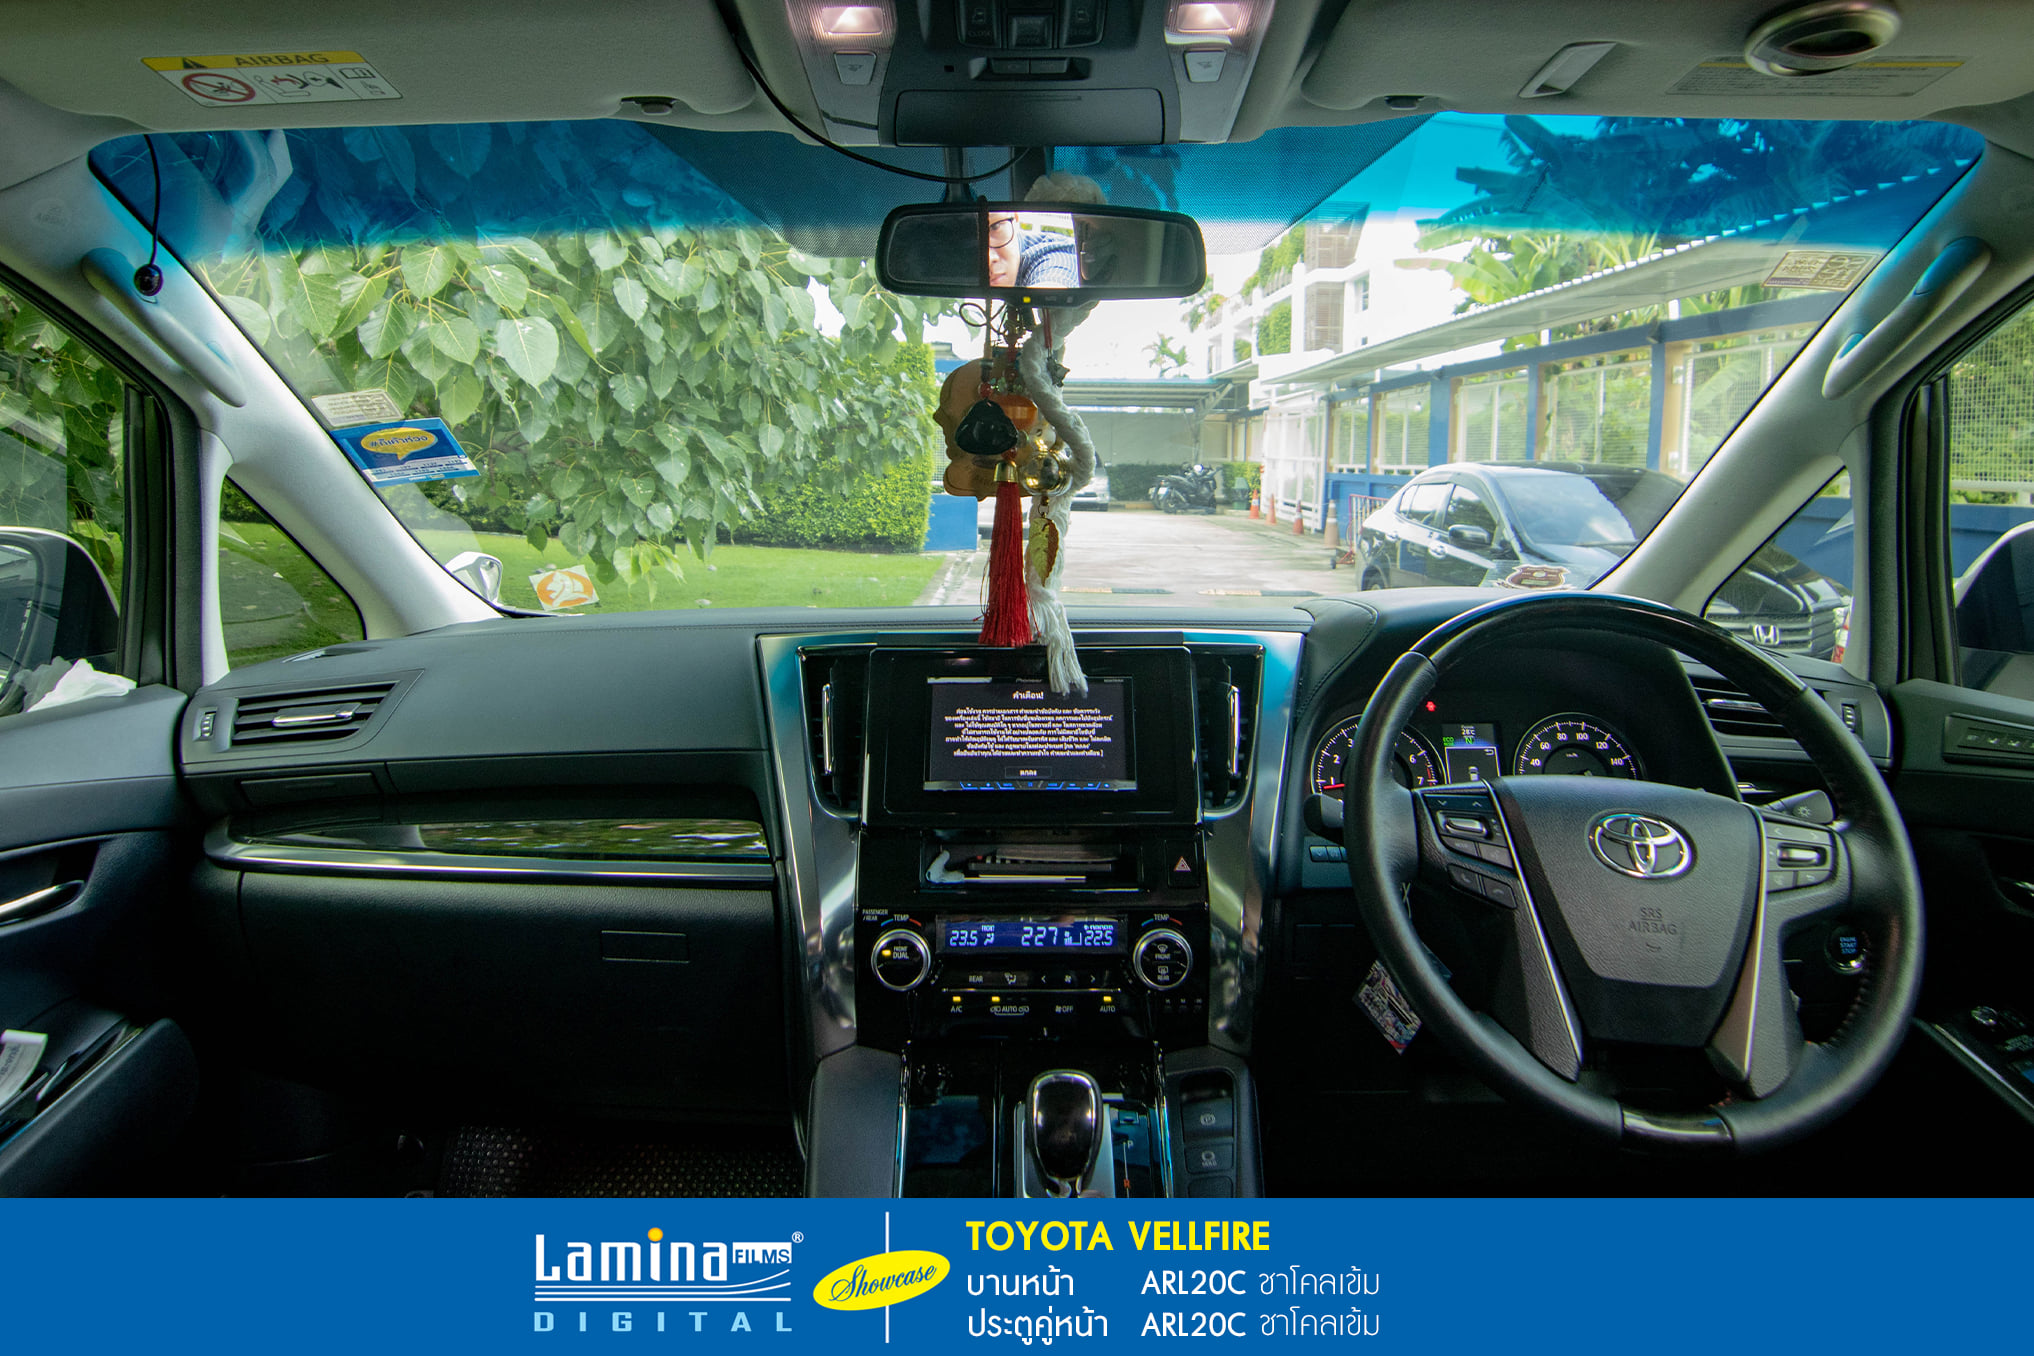 ฟิล์มดำ ฟิล์มสีชา lamina executive series Toyota Vellfire 7